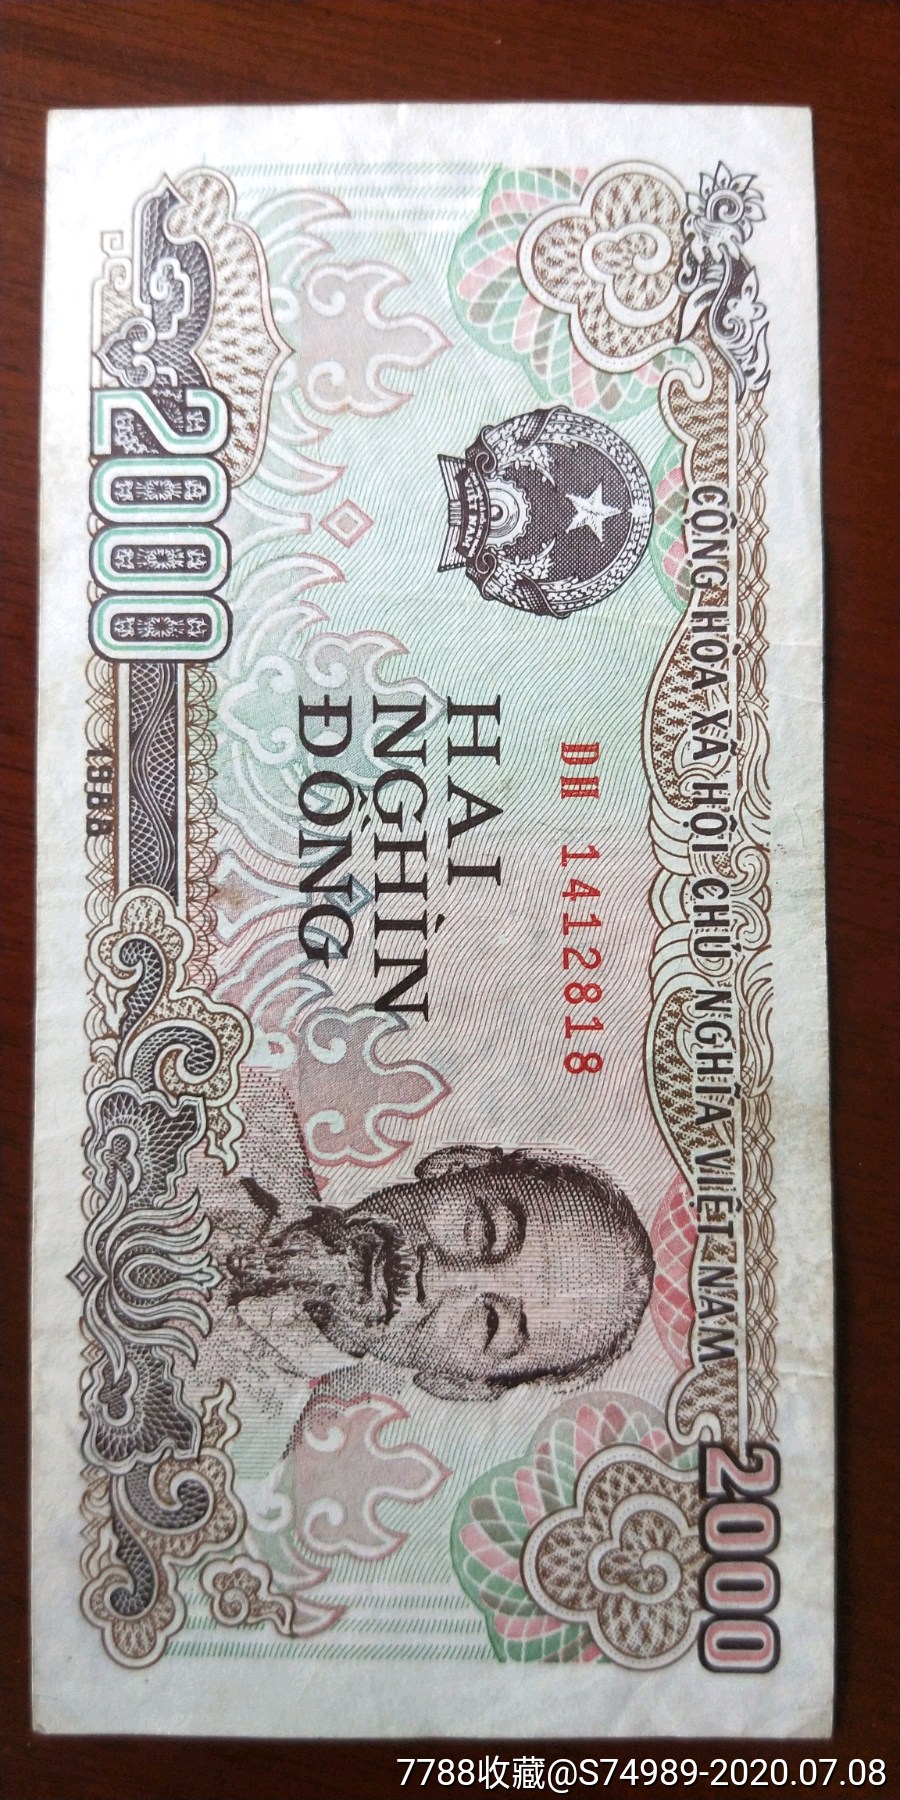 越南币什么样子图片图片